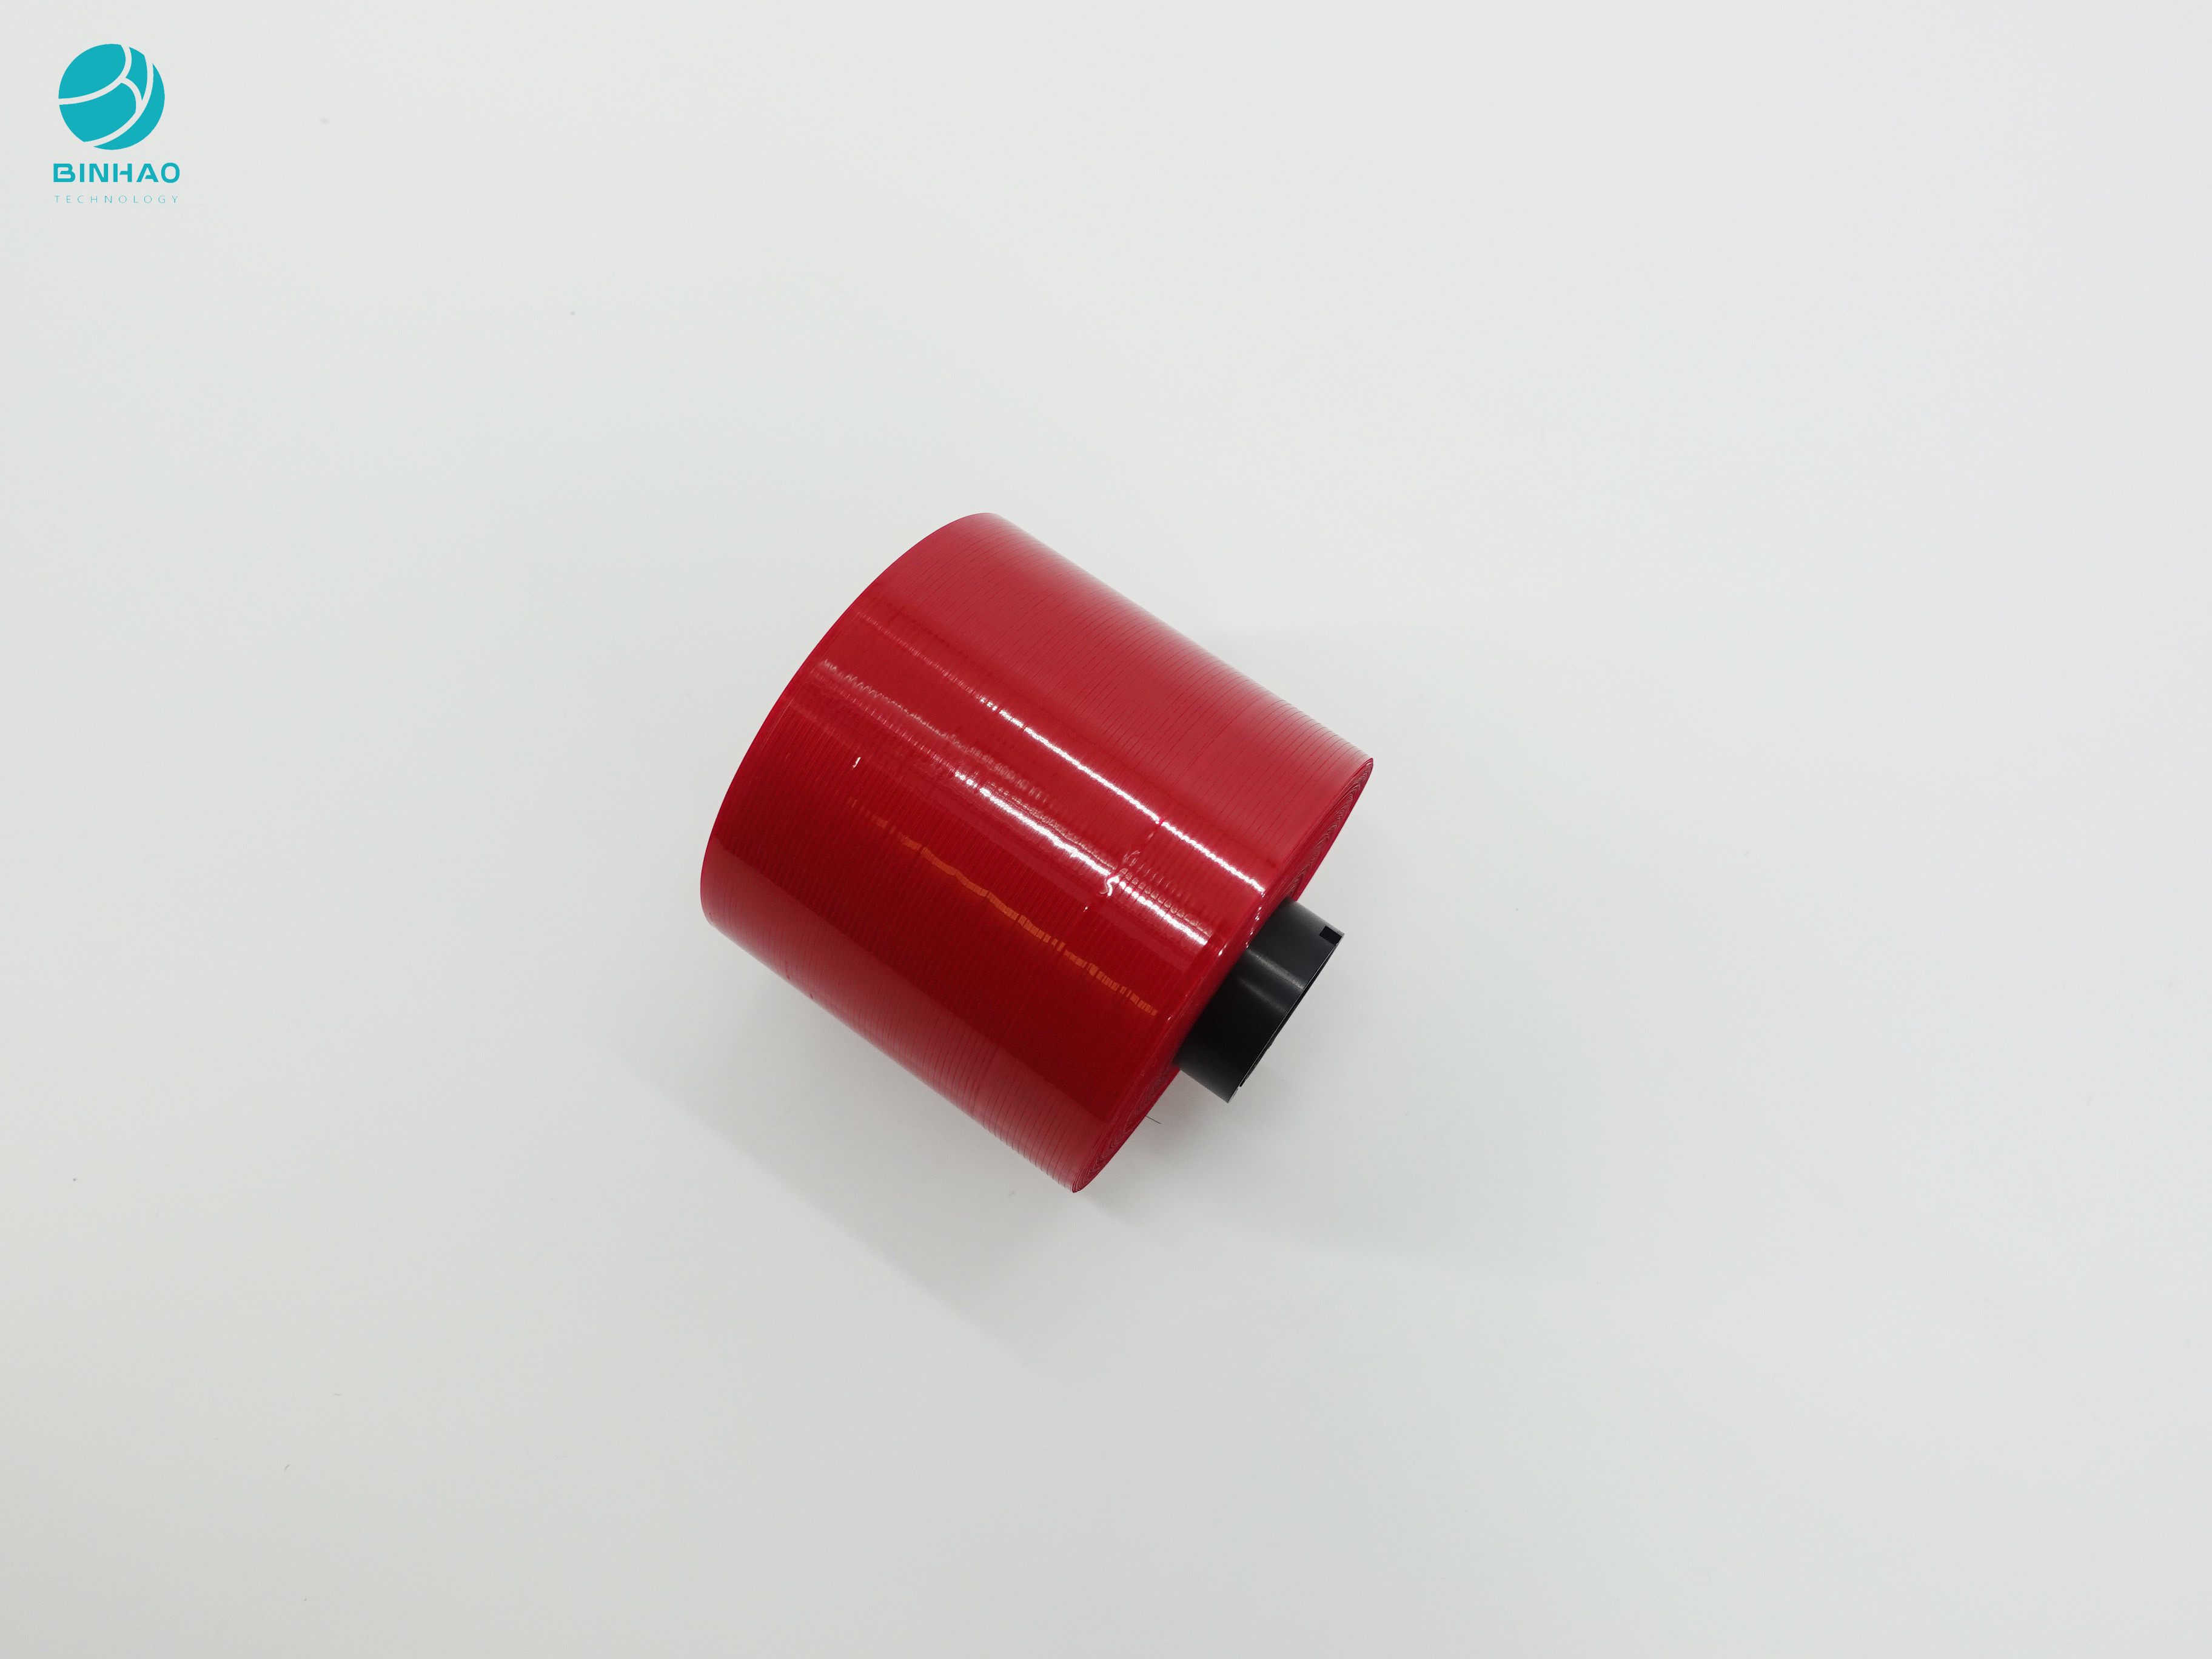 Cinta de falsificación anti rojo oscuro del rasgón del diseño 3m m para el embalaje de la caja del cigarrillo